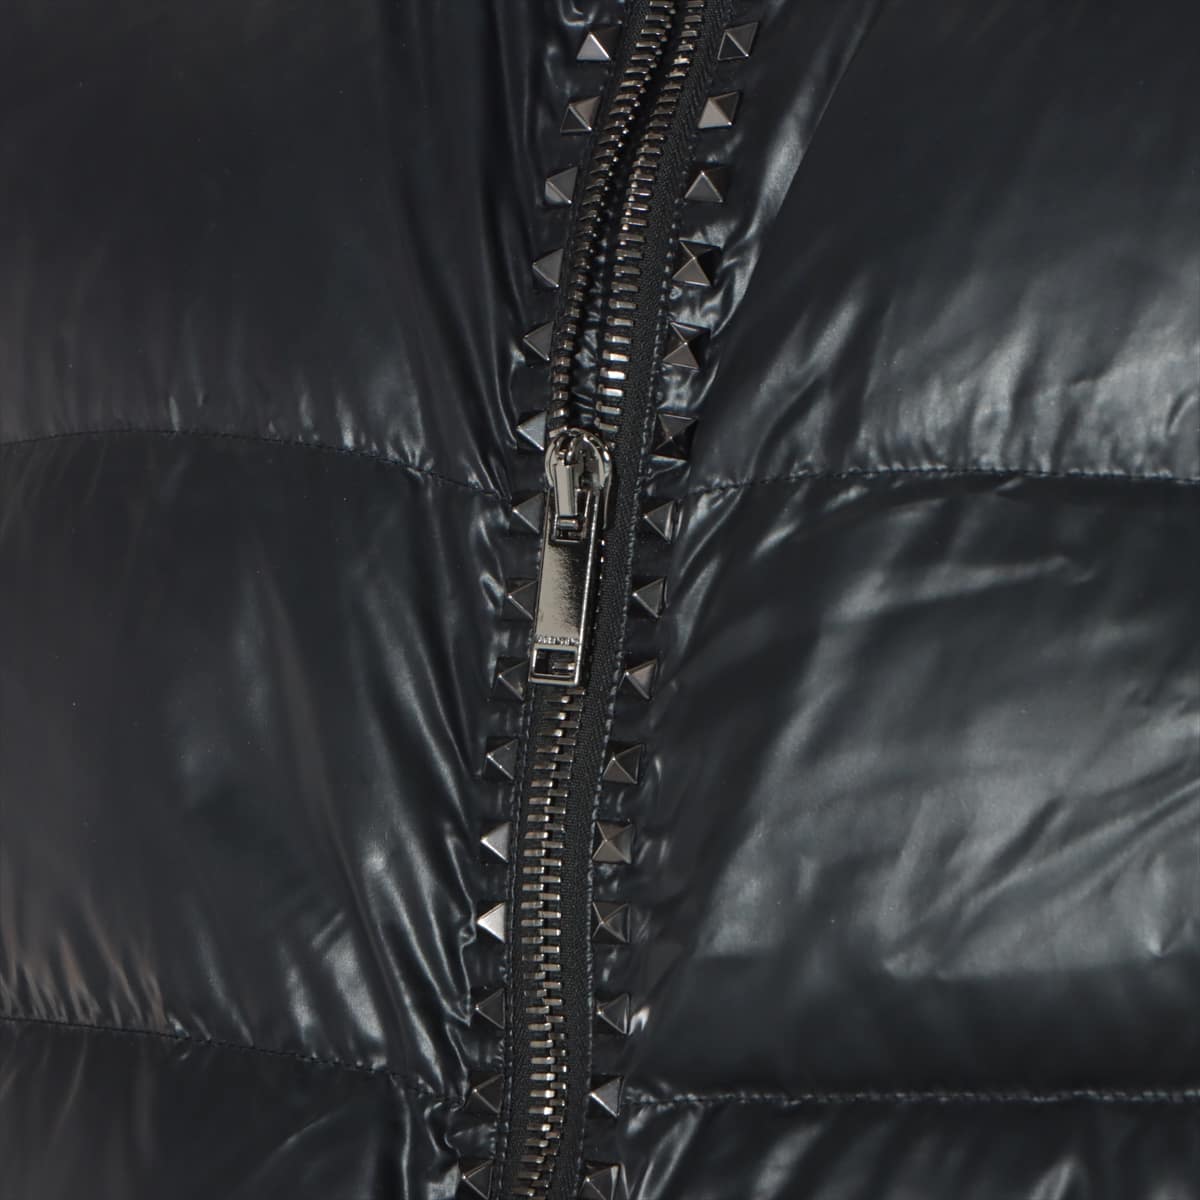 ヴァレンティノ ナイロン ダウンジャケット I46 メンズ ブラック  ロックスタッズ、フード取り外し可能。